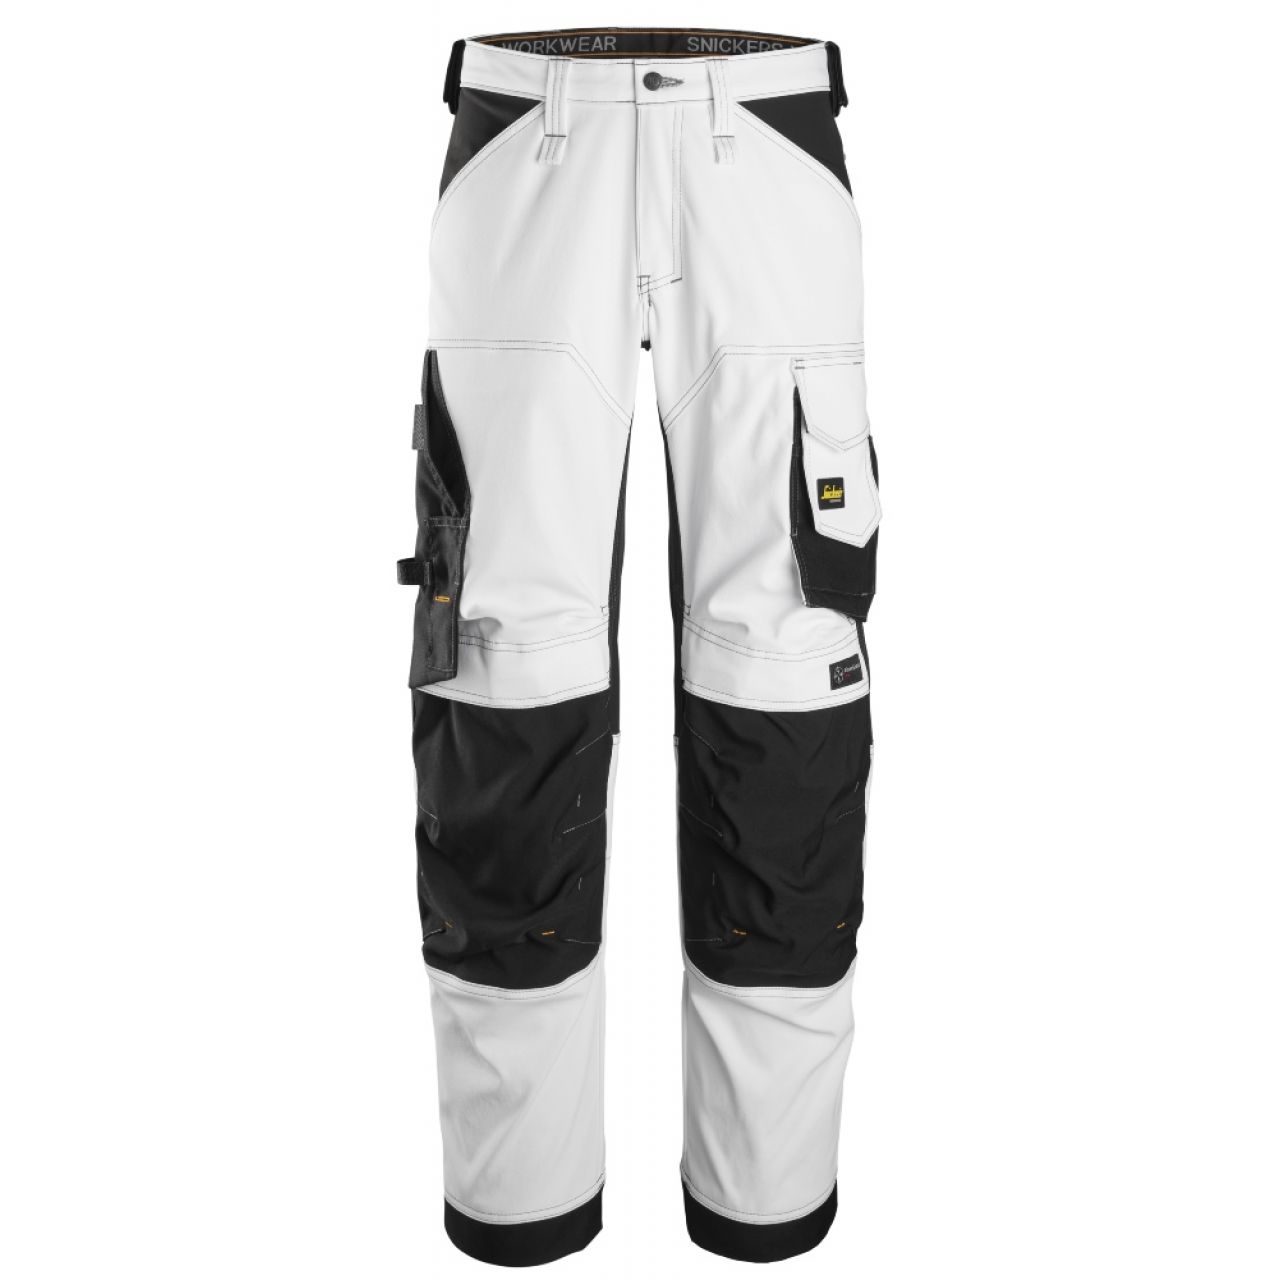 6351 Pantalones largos de trabajo elásticos de ajuste holgado AllroundWork blanco-negro talla 64